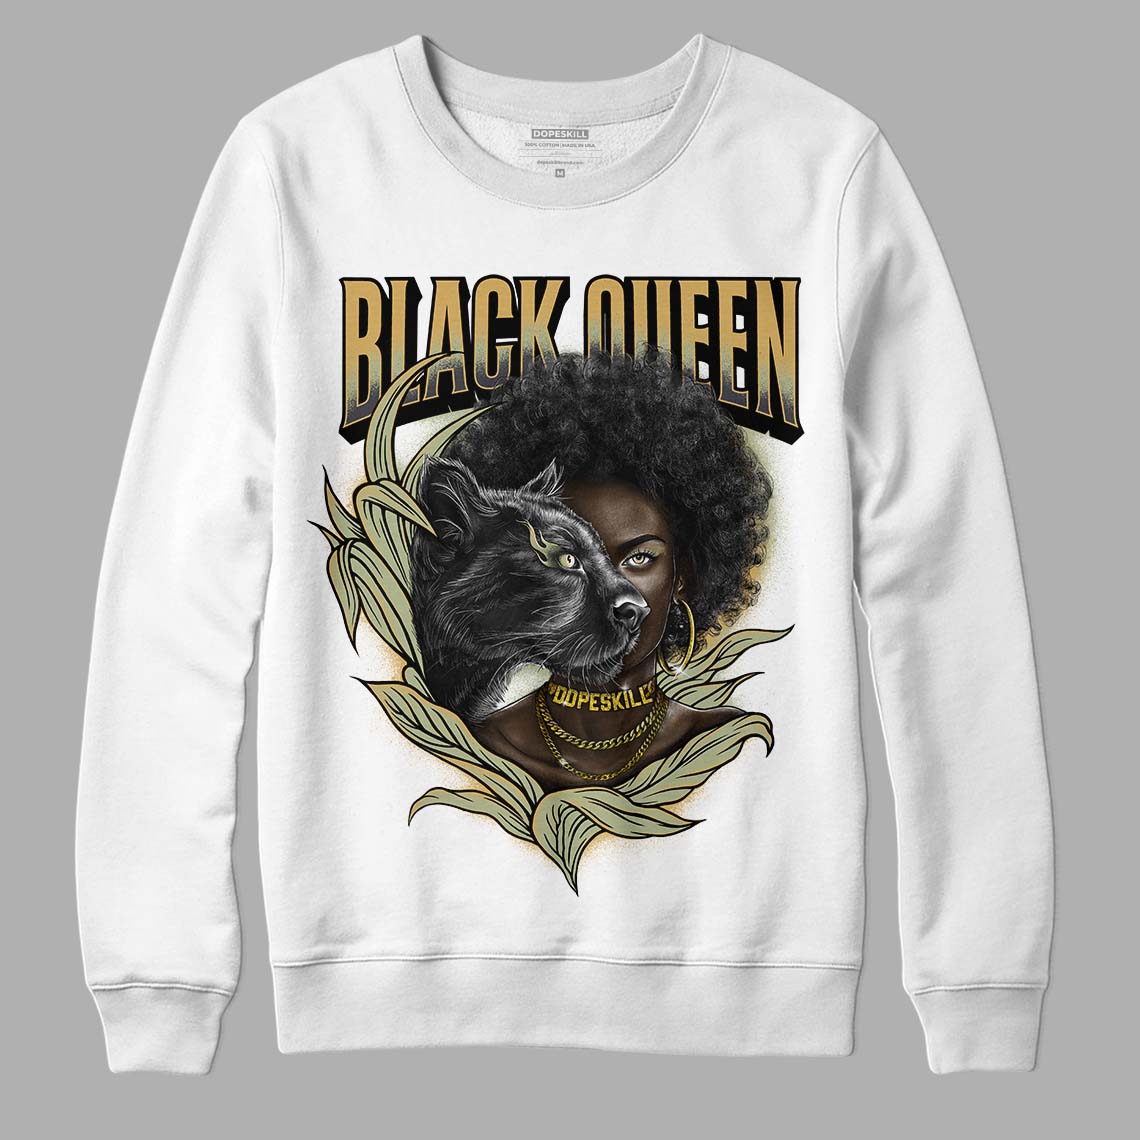 Jade Horizon 5s DopeSkill Sweatshirt New Black Queen Graphic - White 